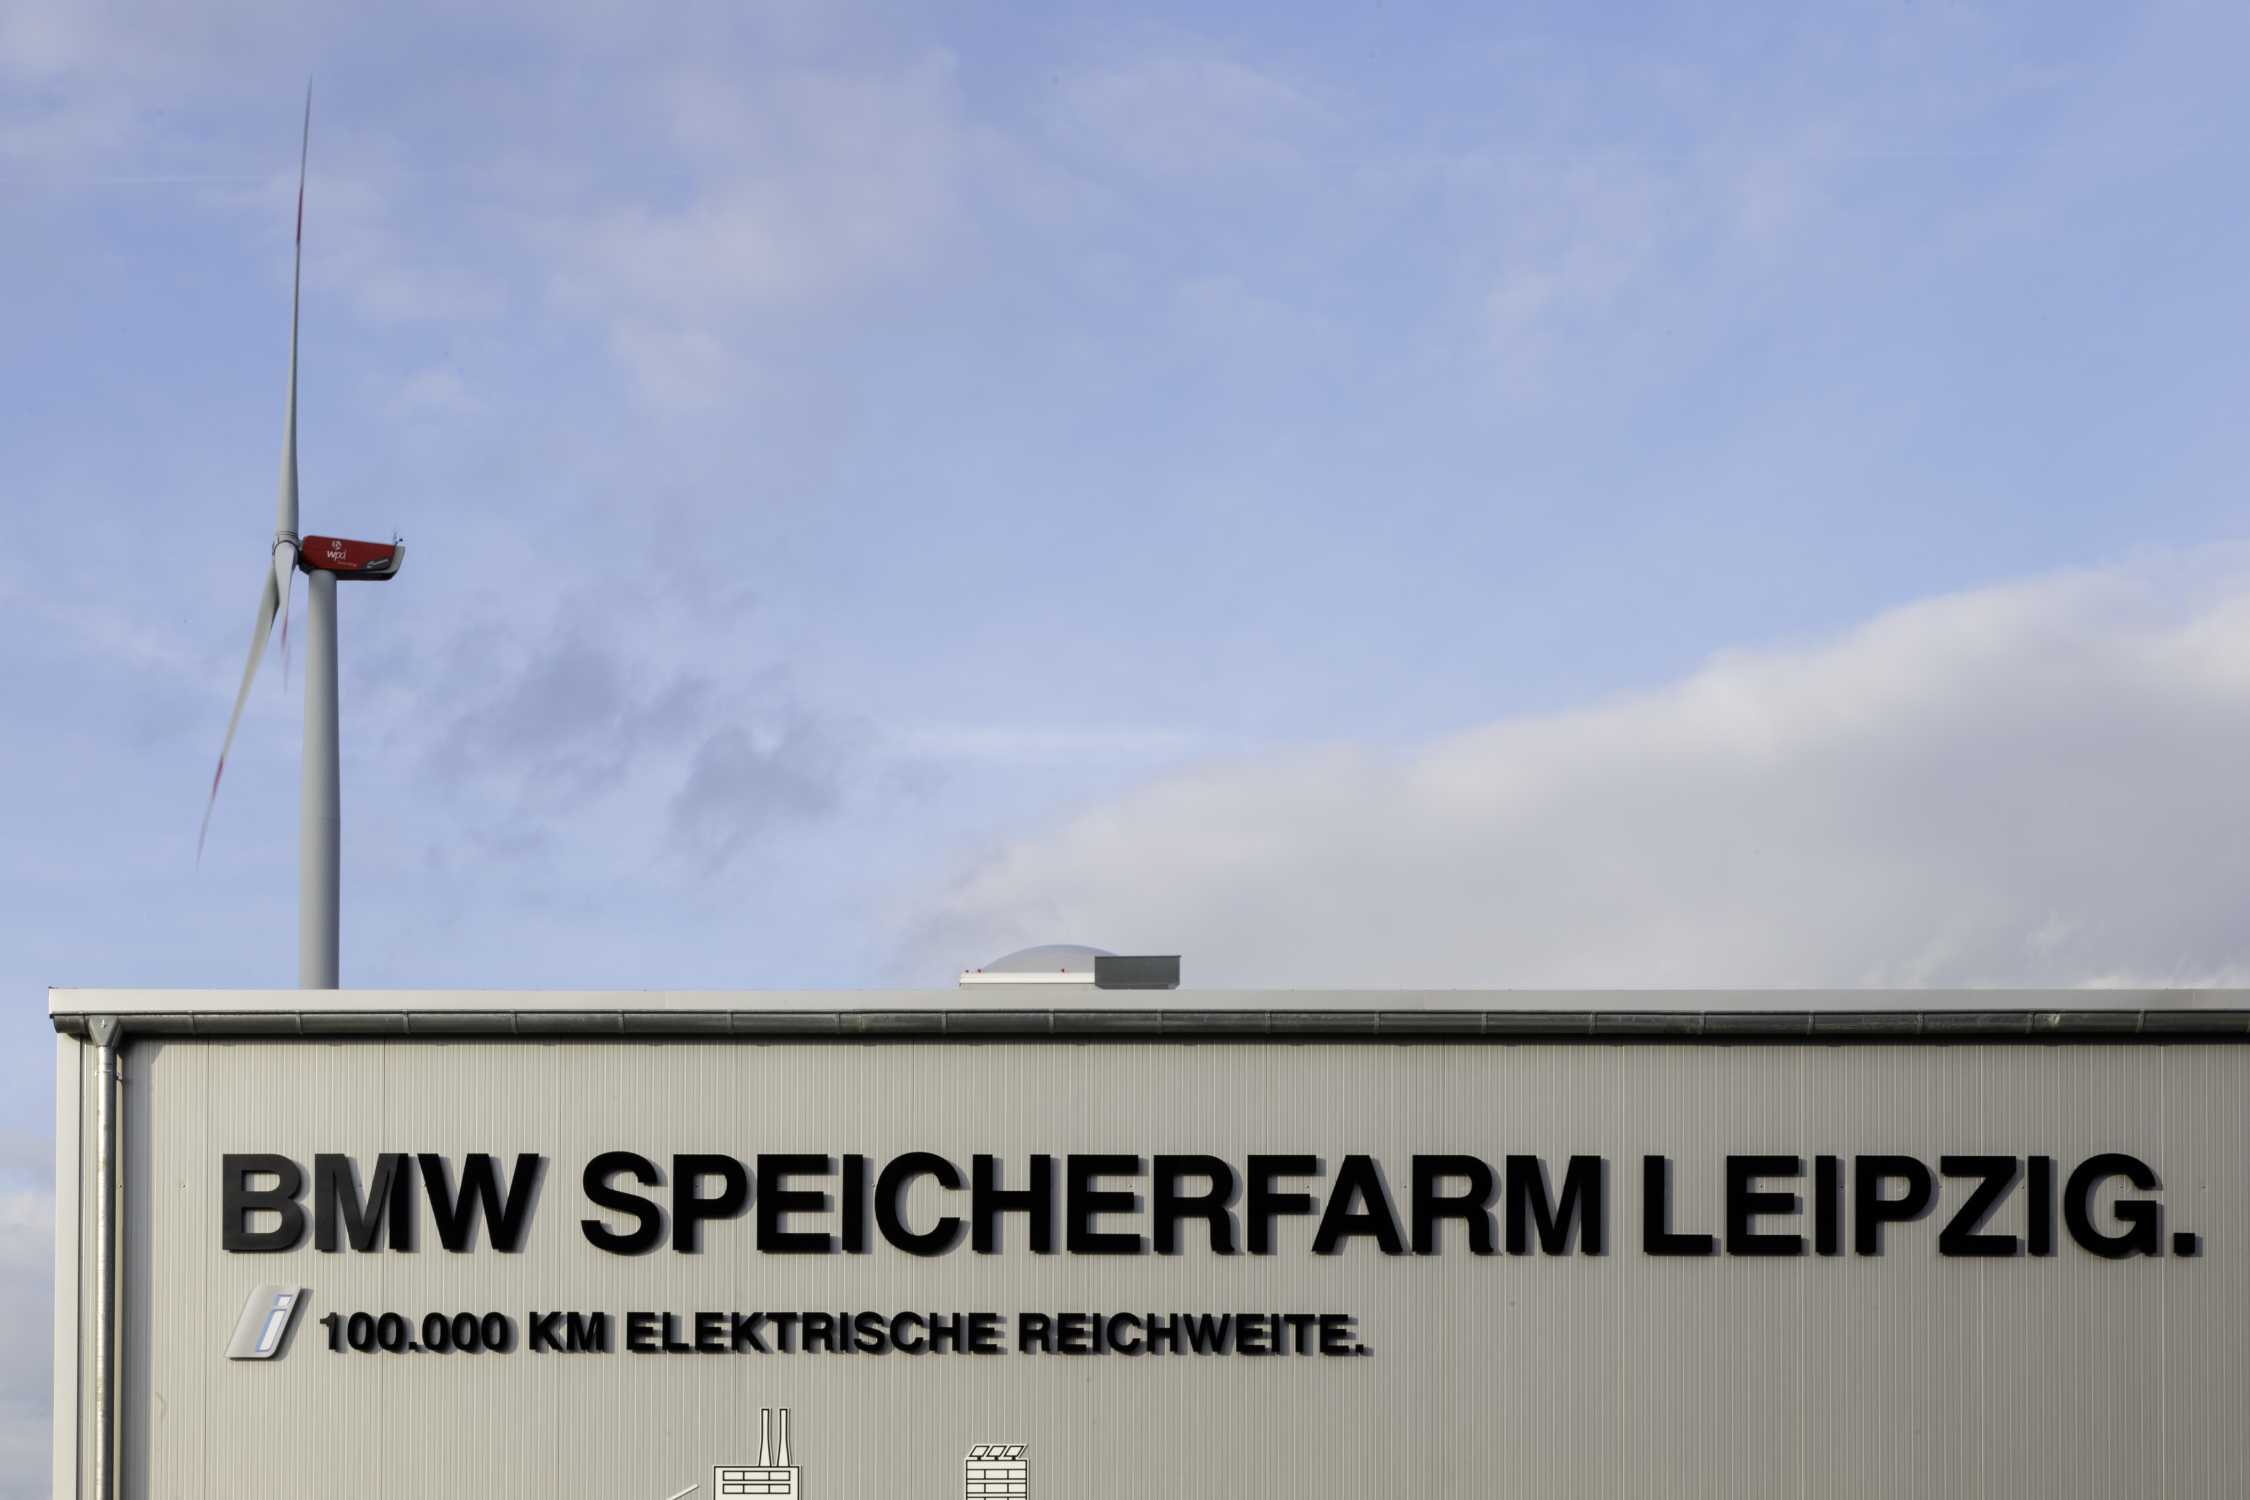 BMW Battery Storage Farm Leipzig (10/2017)